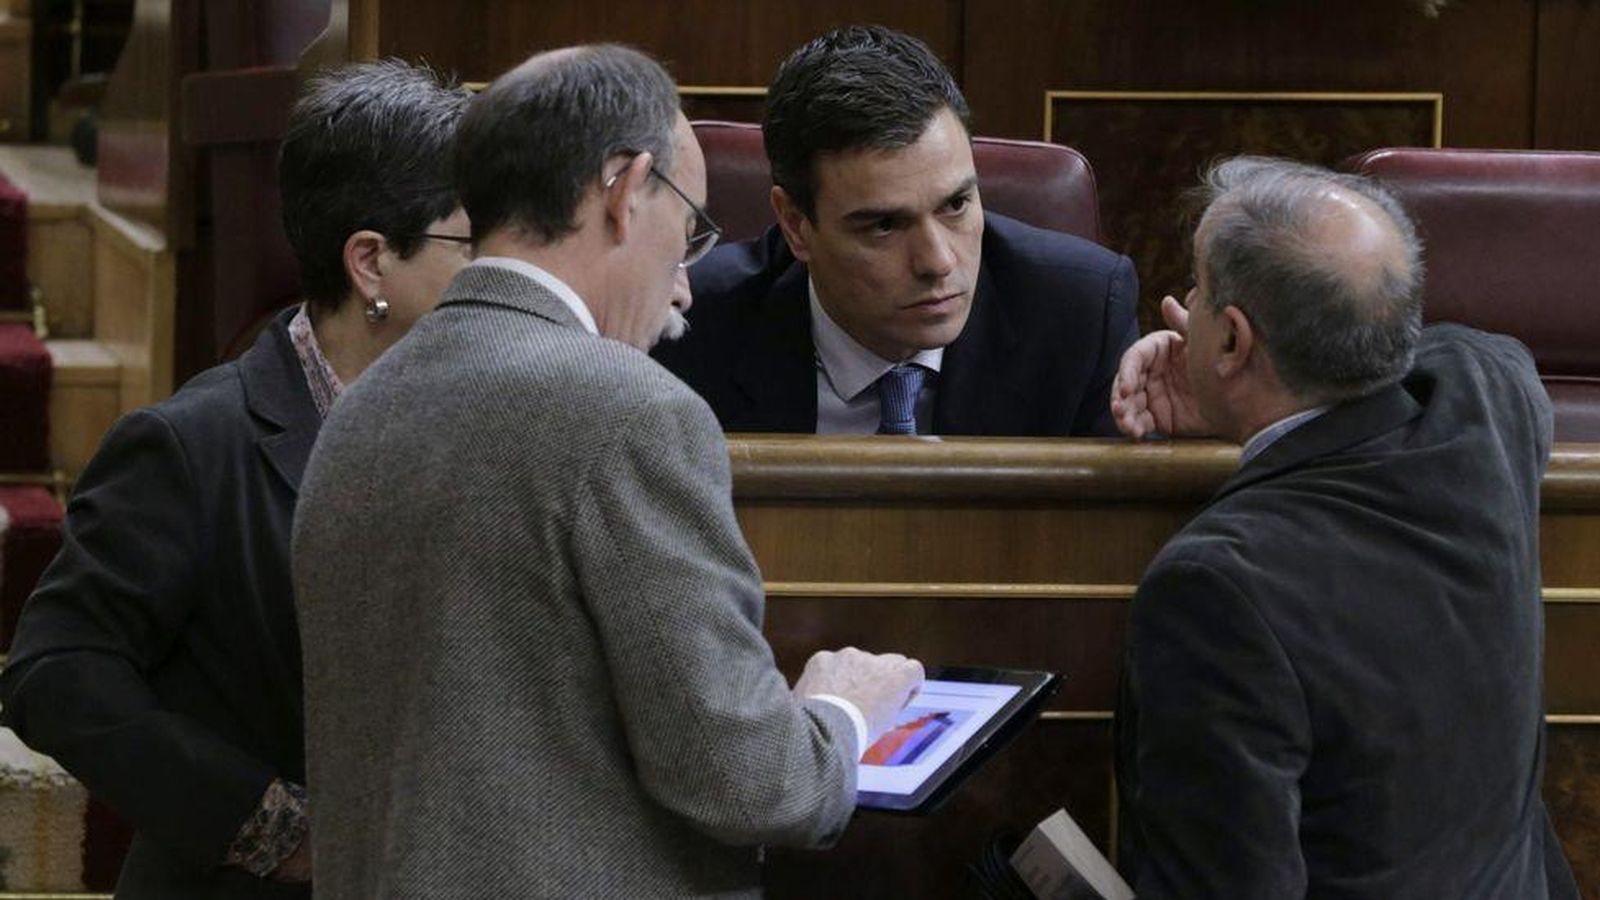 Foto: El líder del PSOE, Pedro Sánchez, conversa con un grupo de diputados mientras uno de ellos observa su iPad. (EFE)